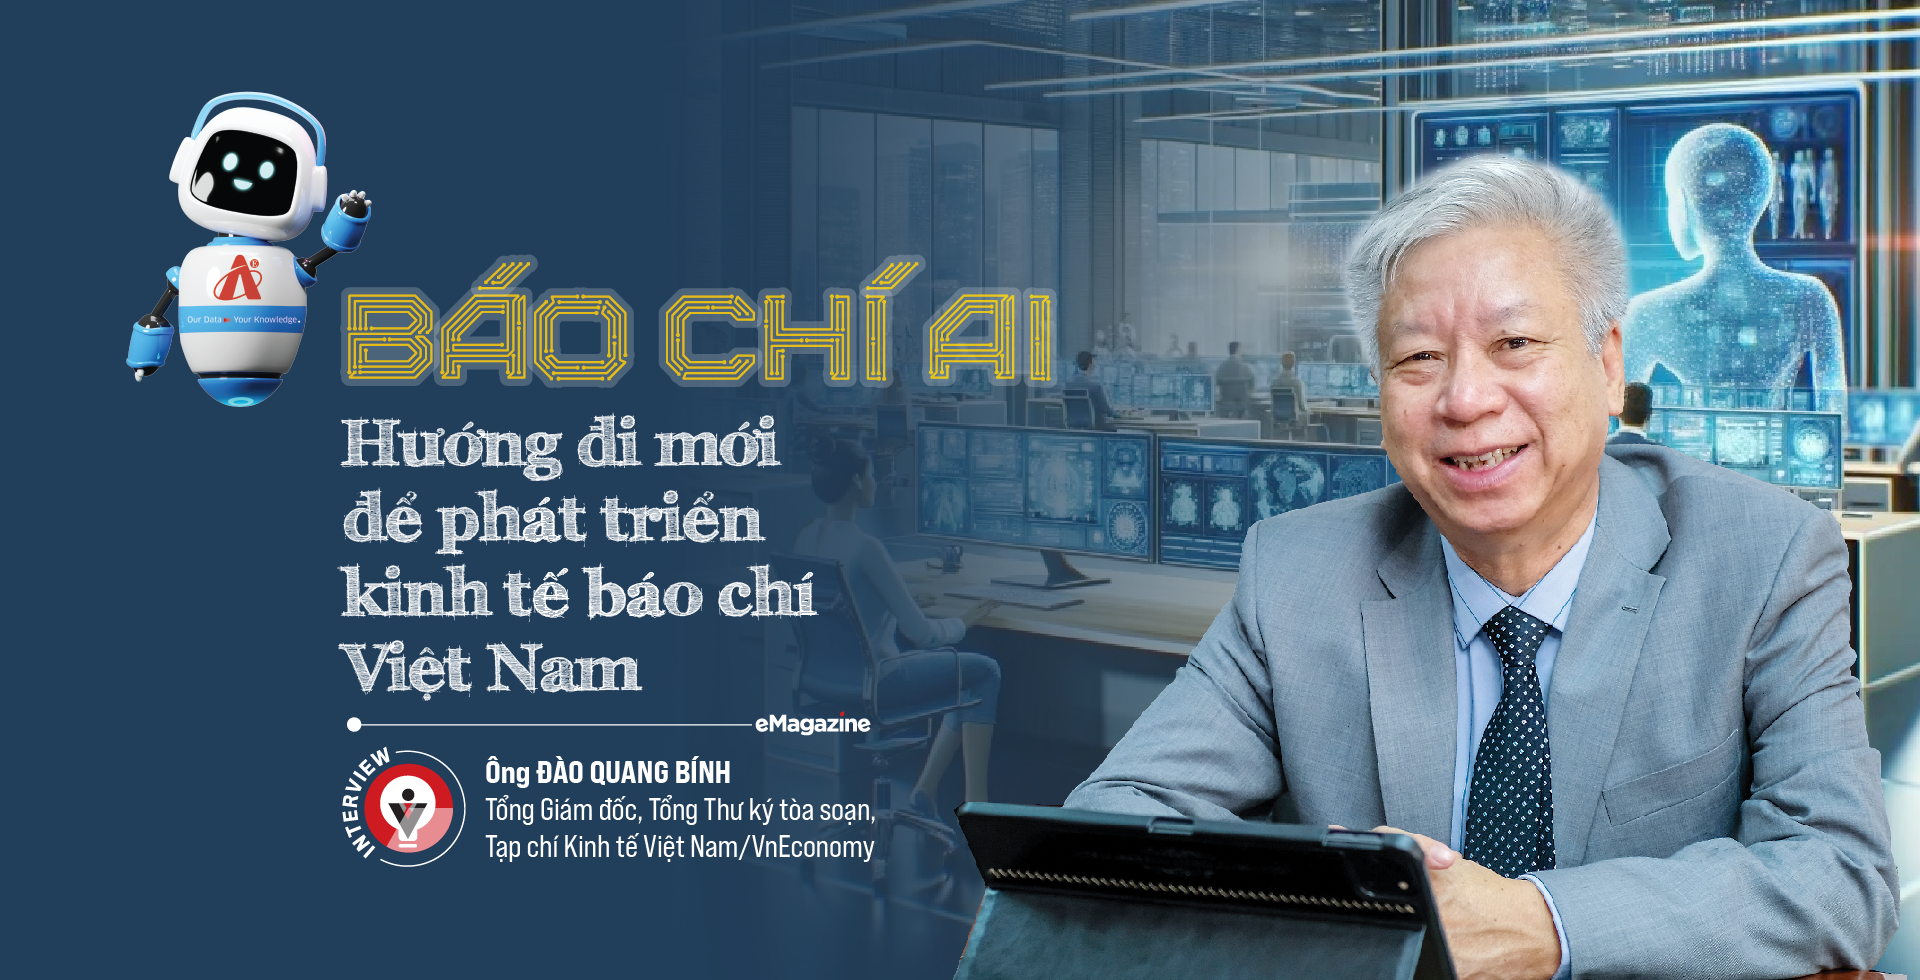 Báo chí AI: Hướng đi mới để phát triển kinh tế báo chí Việt Nam  - Ảnh 1